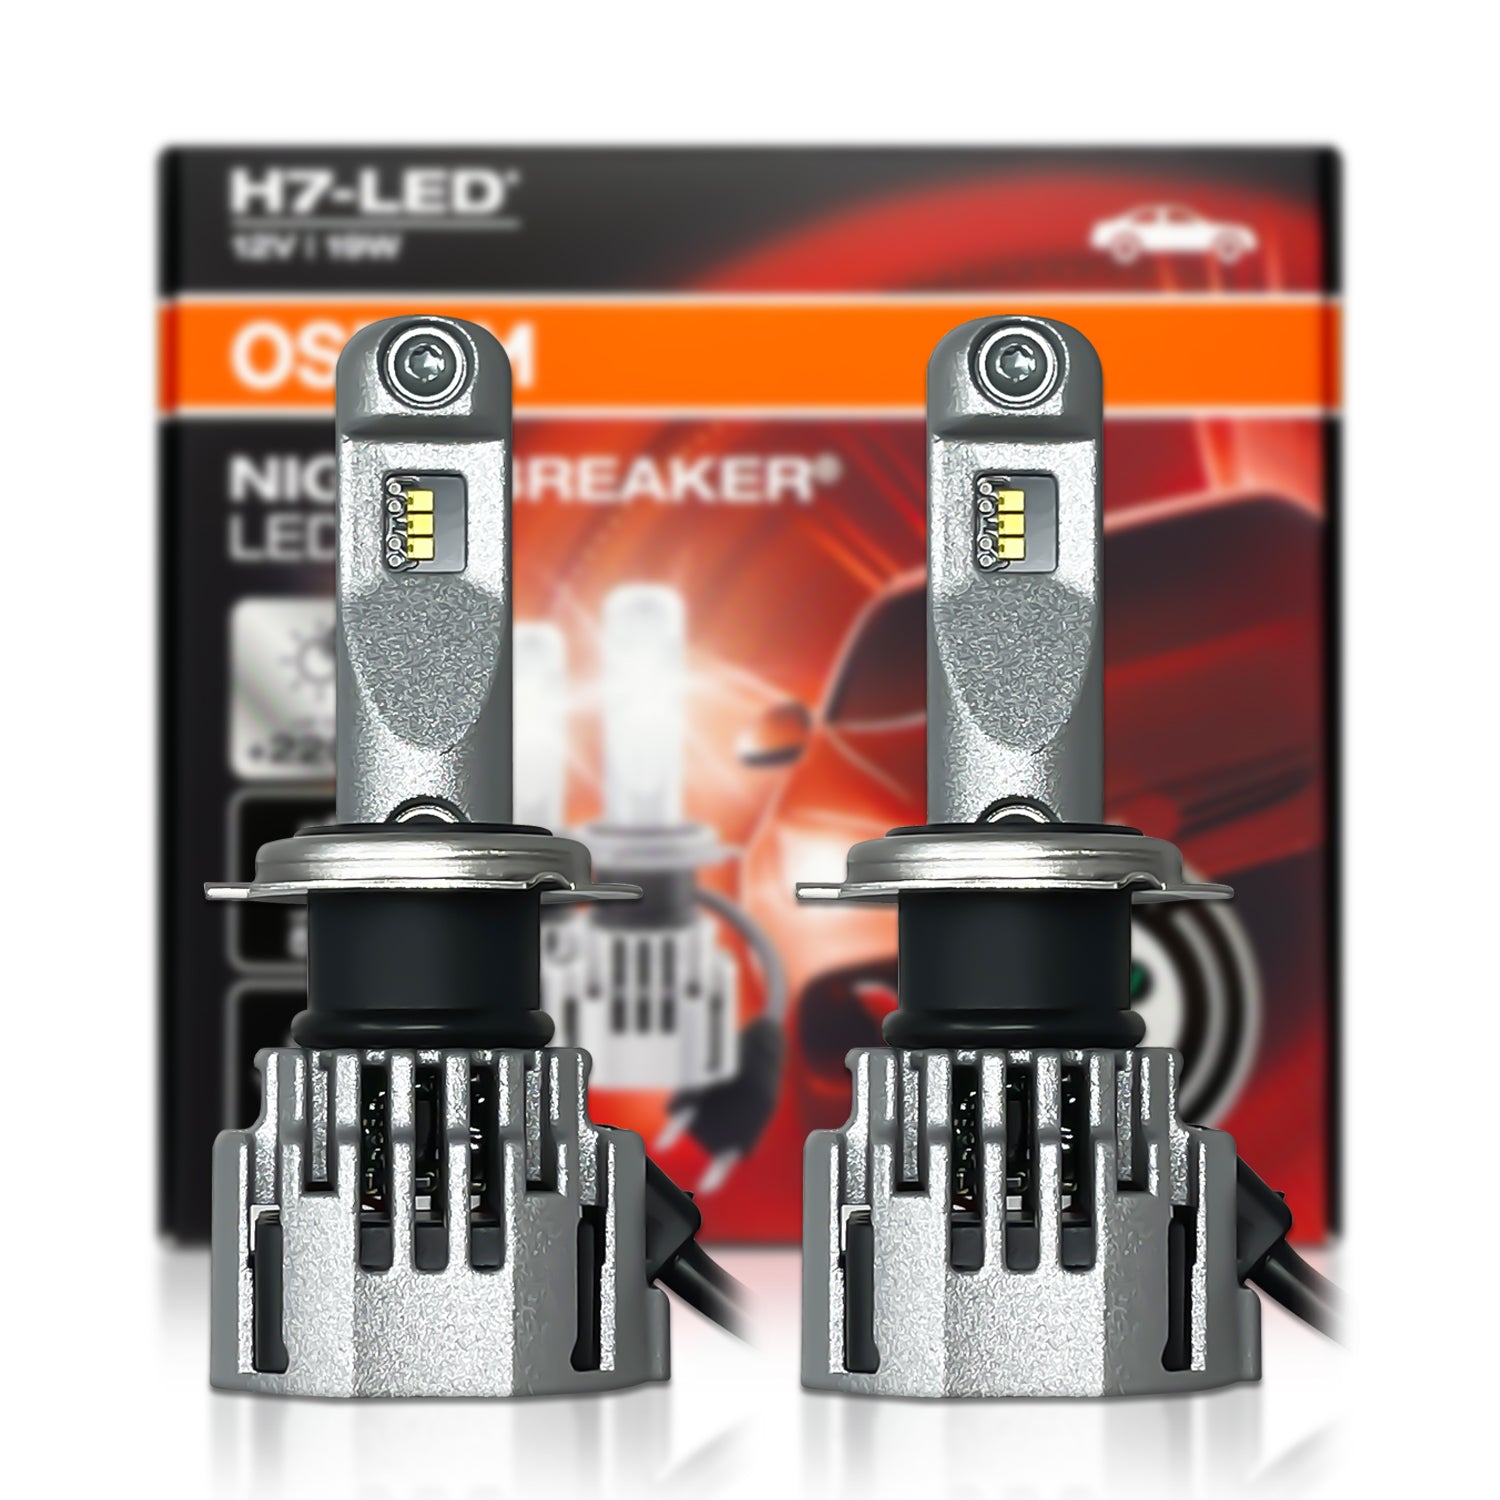 NIGHT BREAKER H7-LED